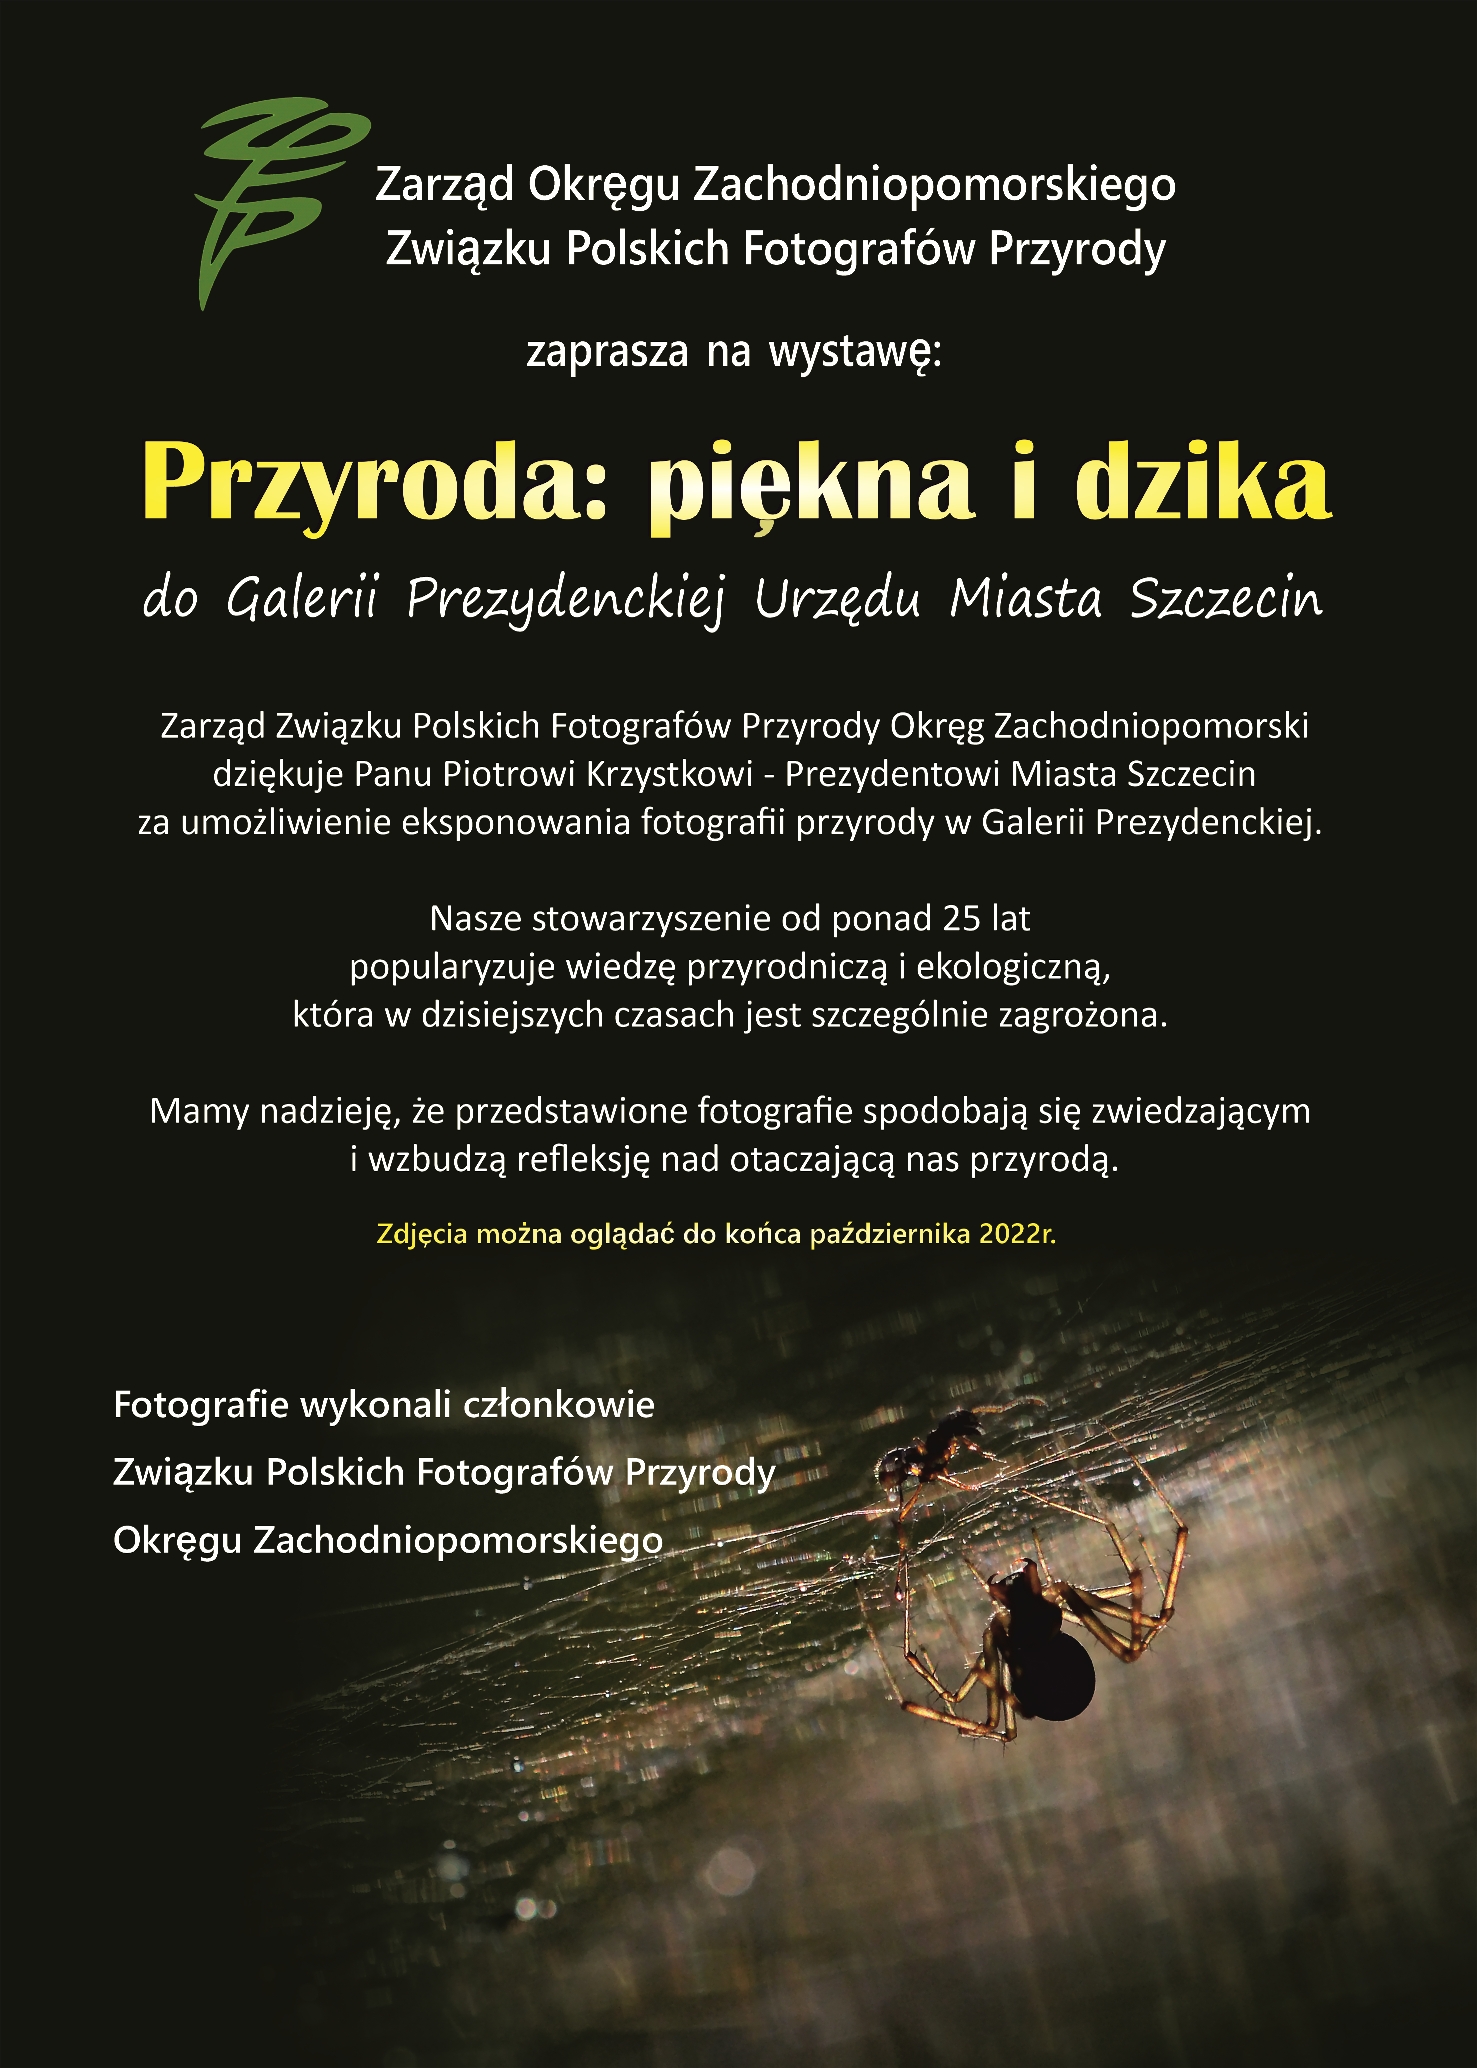 Plakat organizatora - zdjęcie pająka wraz z informacjami zawartymi w newsie